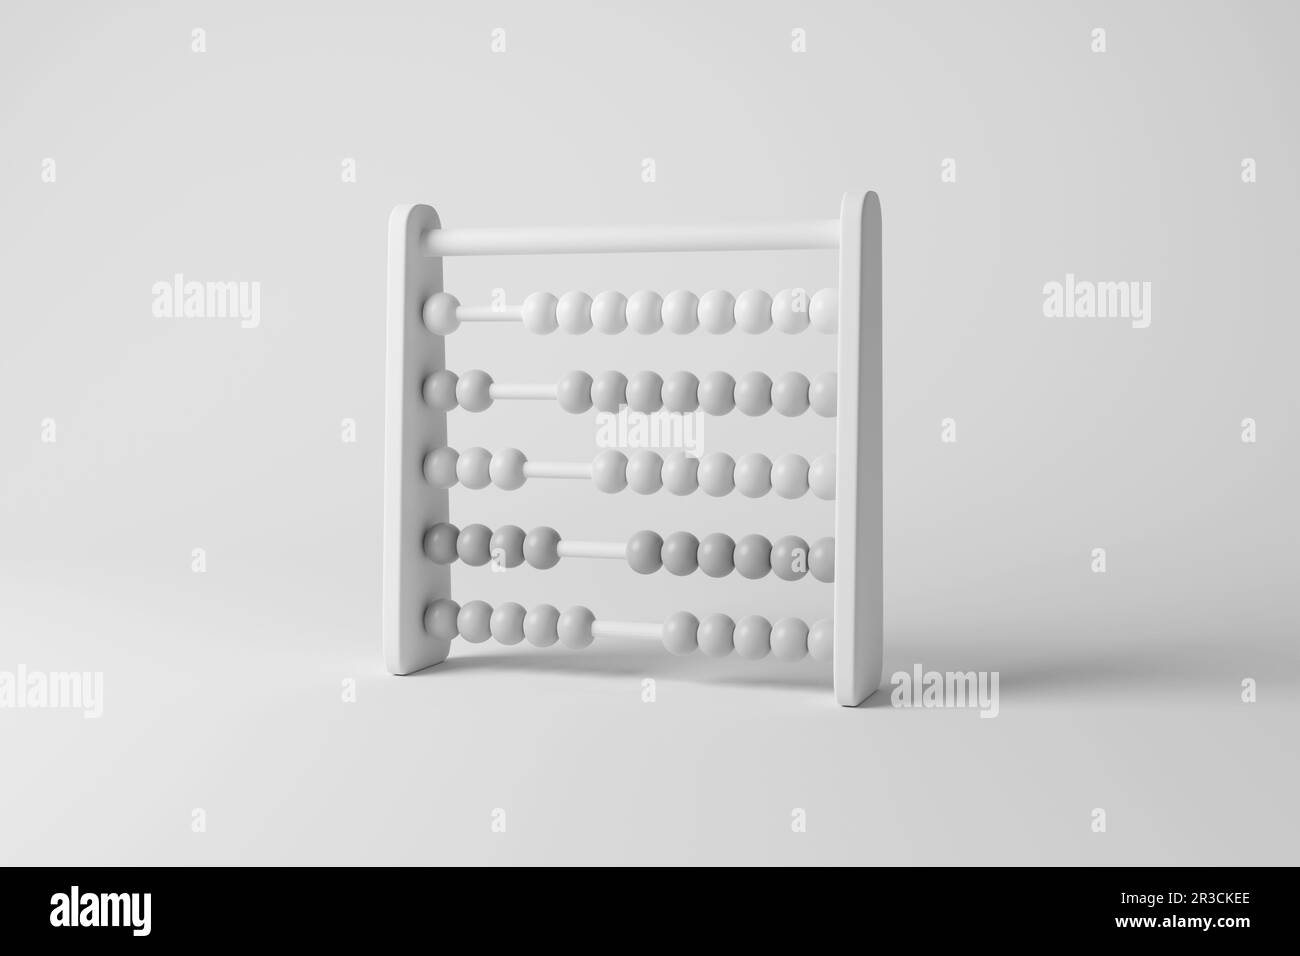 Bianco Abacus giocattolo casting ombra su sfondo bianco in scala di grigi monocromatico. Illustrazione del concetto di giocattoli per bambini e matematica Foto Stock